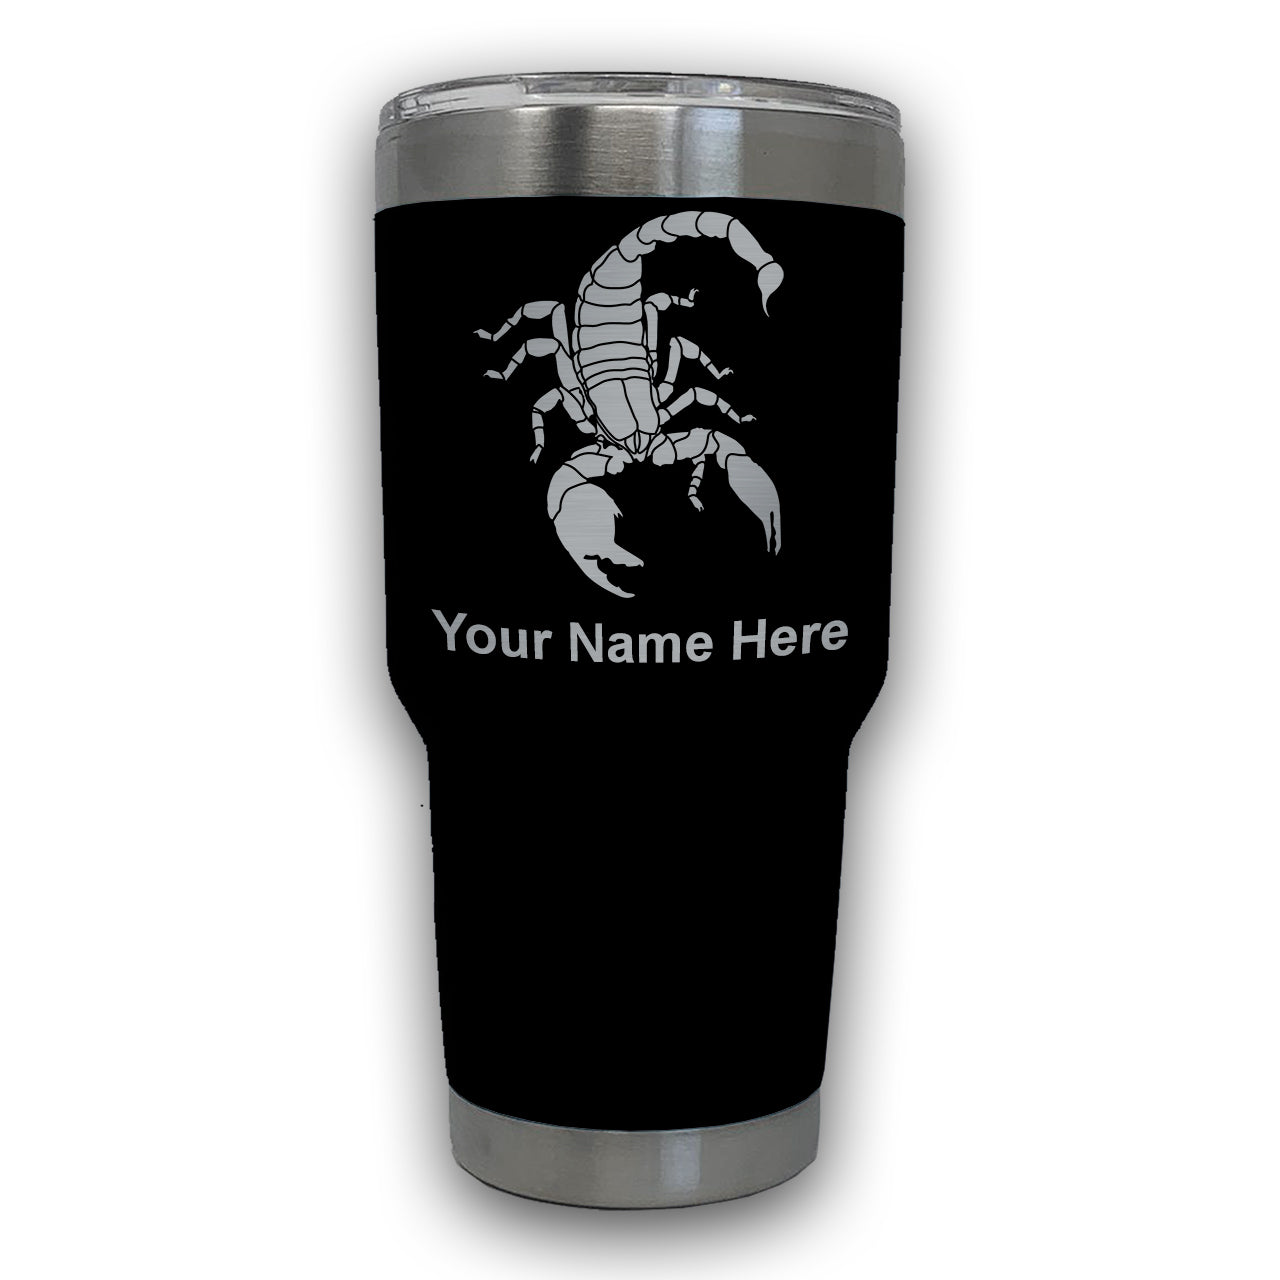 LaserGram 30oz Tumbler Mug, Scorpion, Personalized Engraving Included